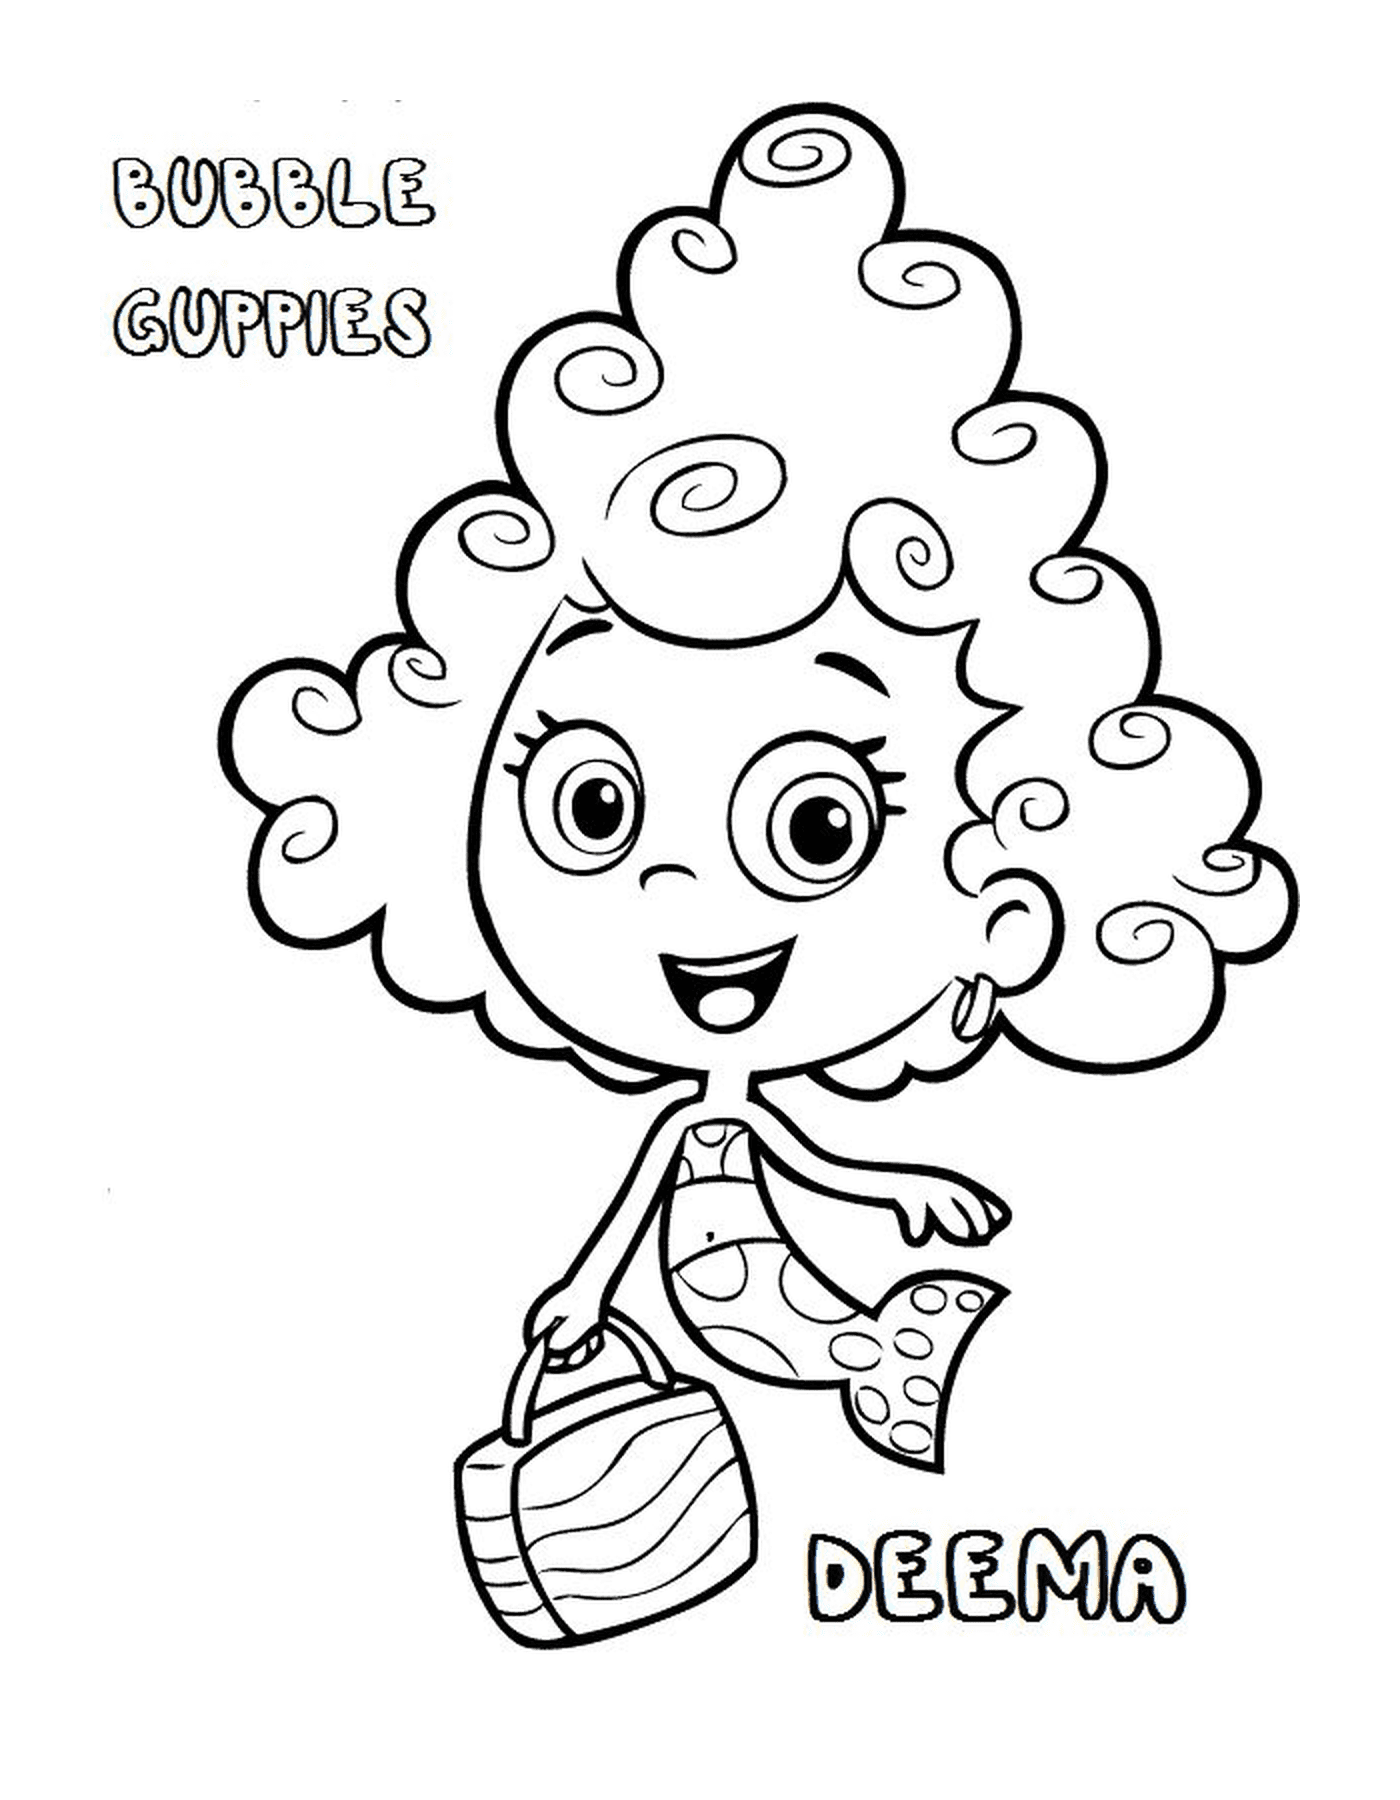  Deema der Bubble Guppies, ein Mädchen mit lockigen Haaren 